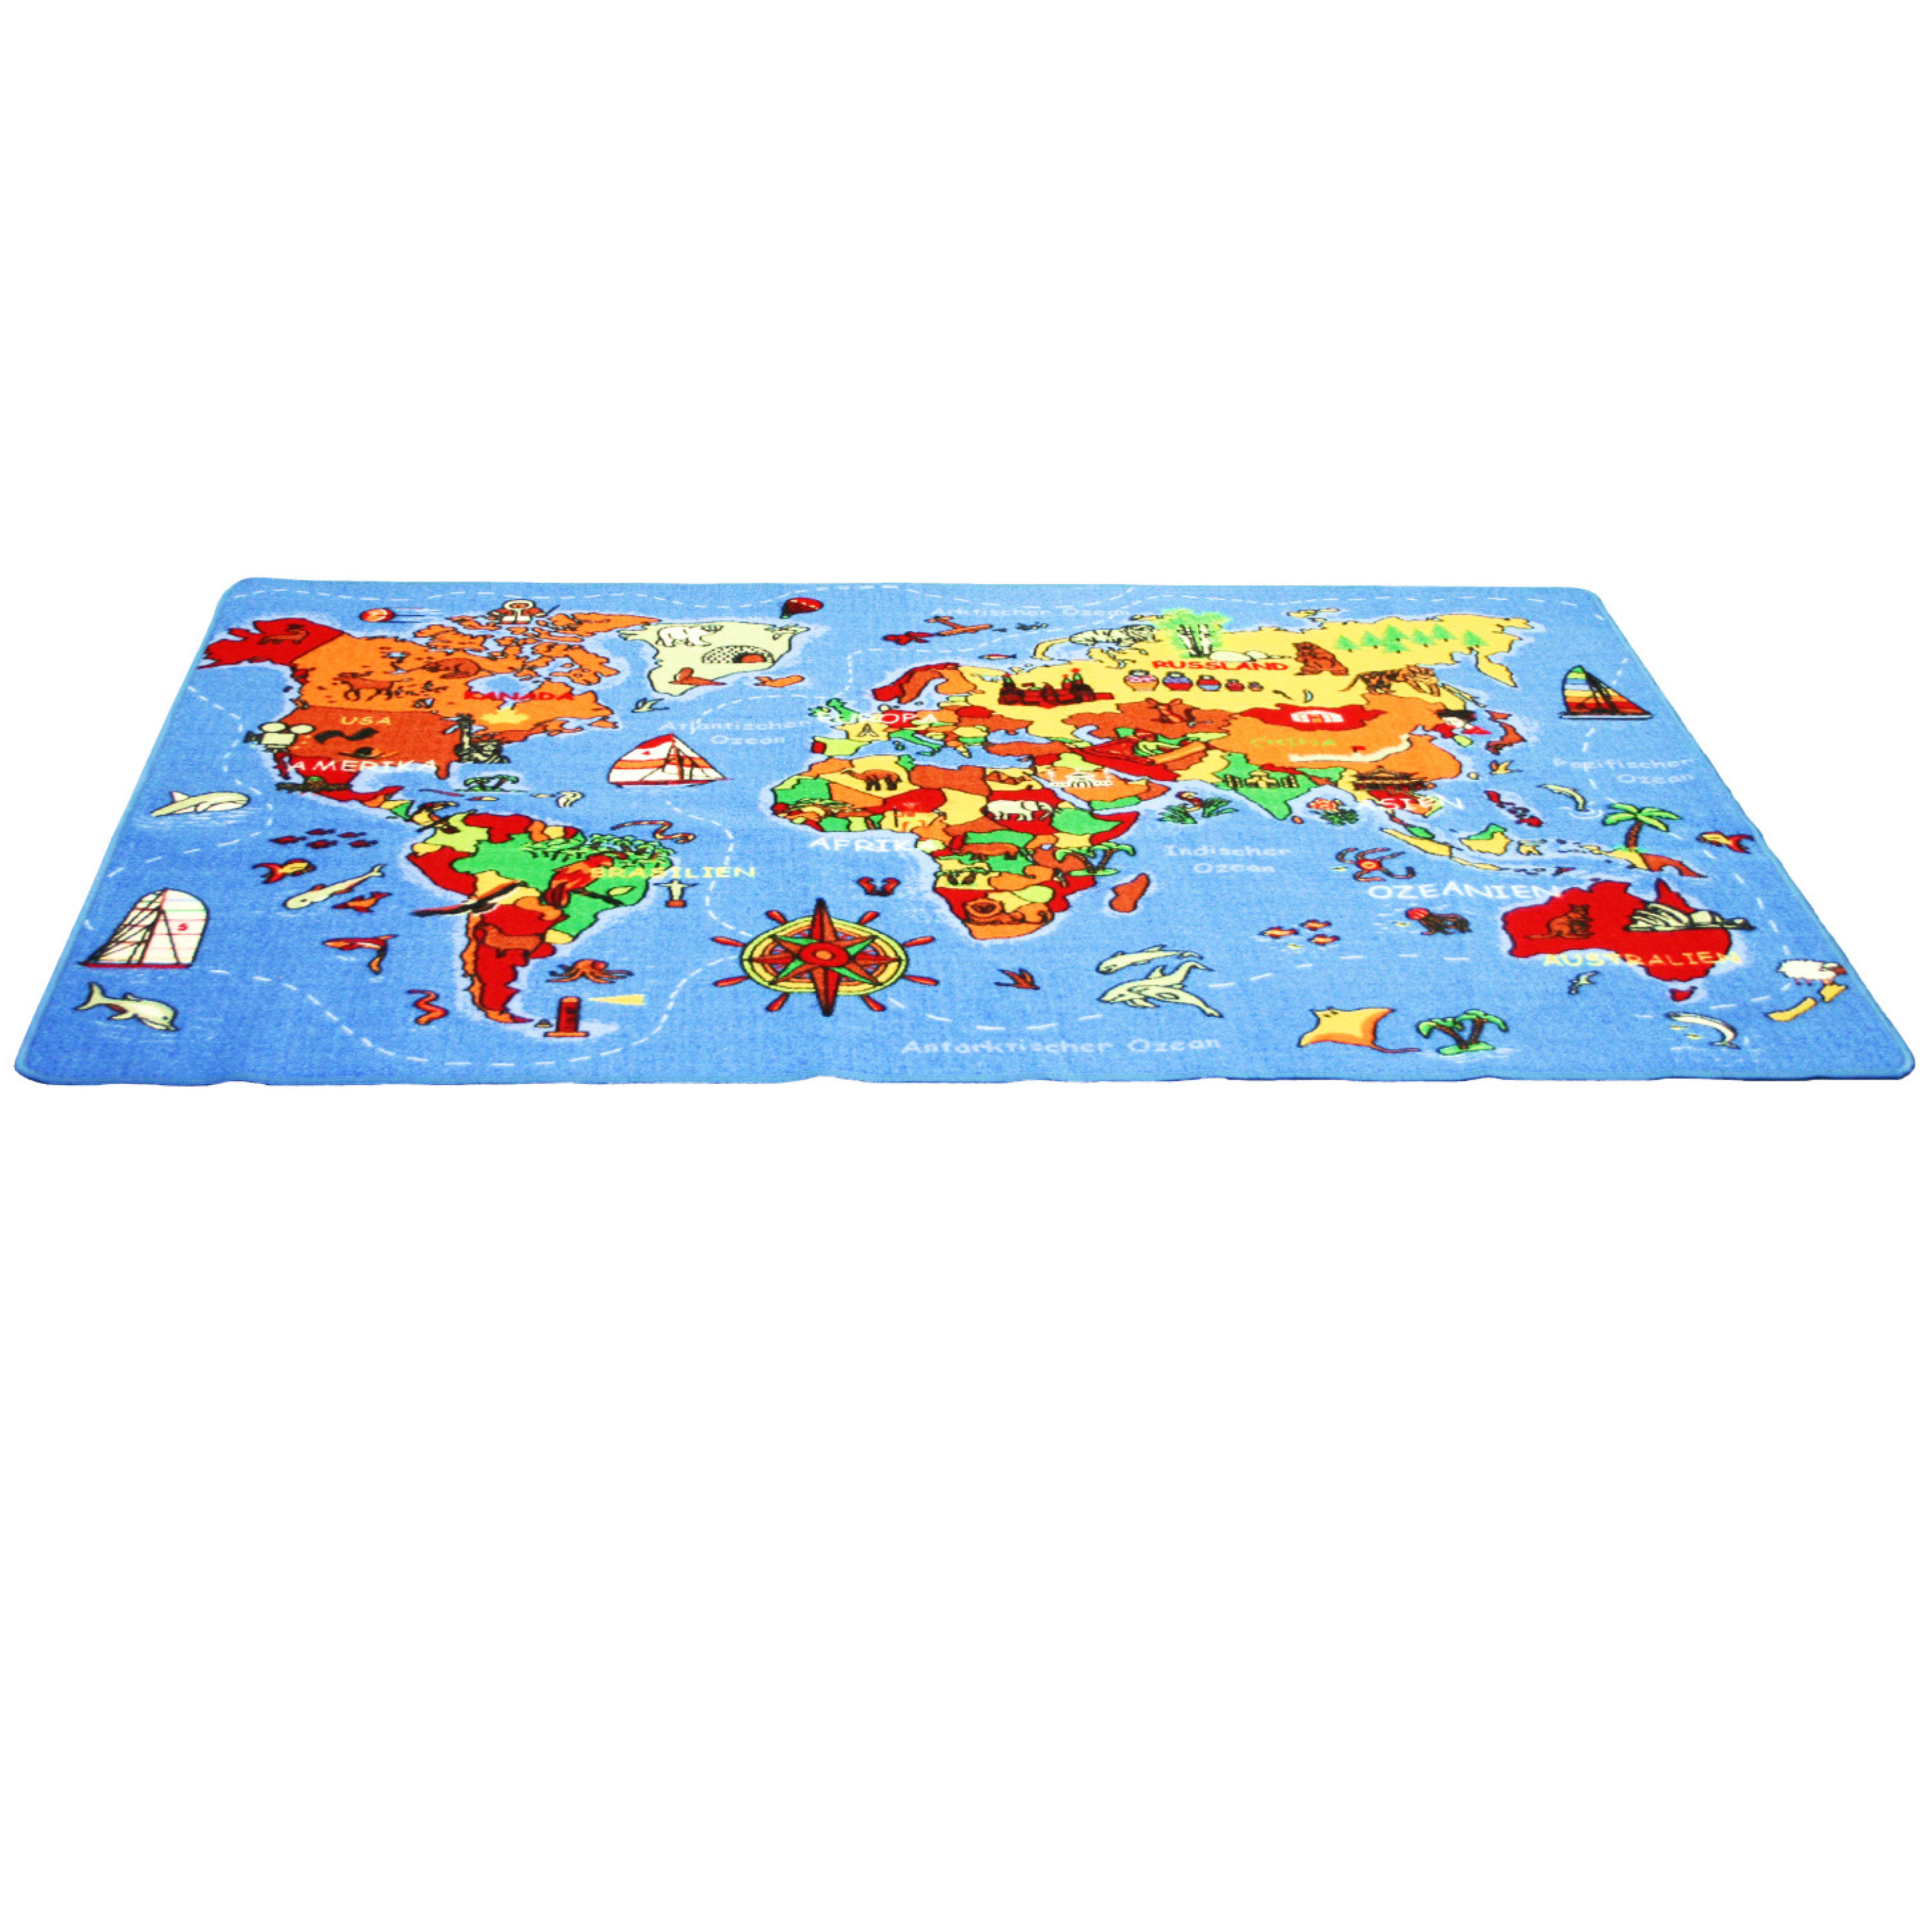 Spielteppich 'Die Welt', 200 x 140 cm